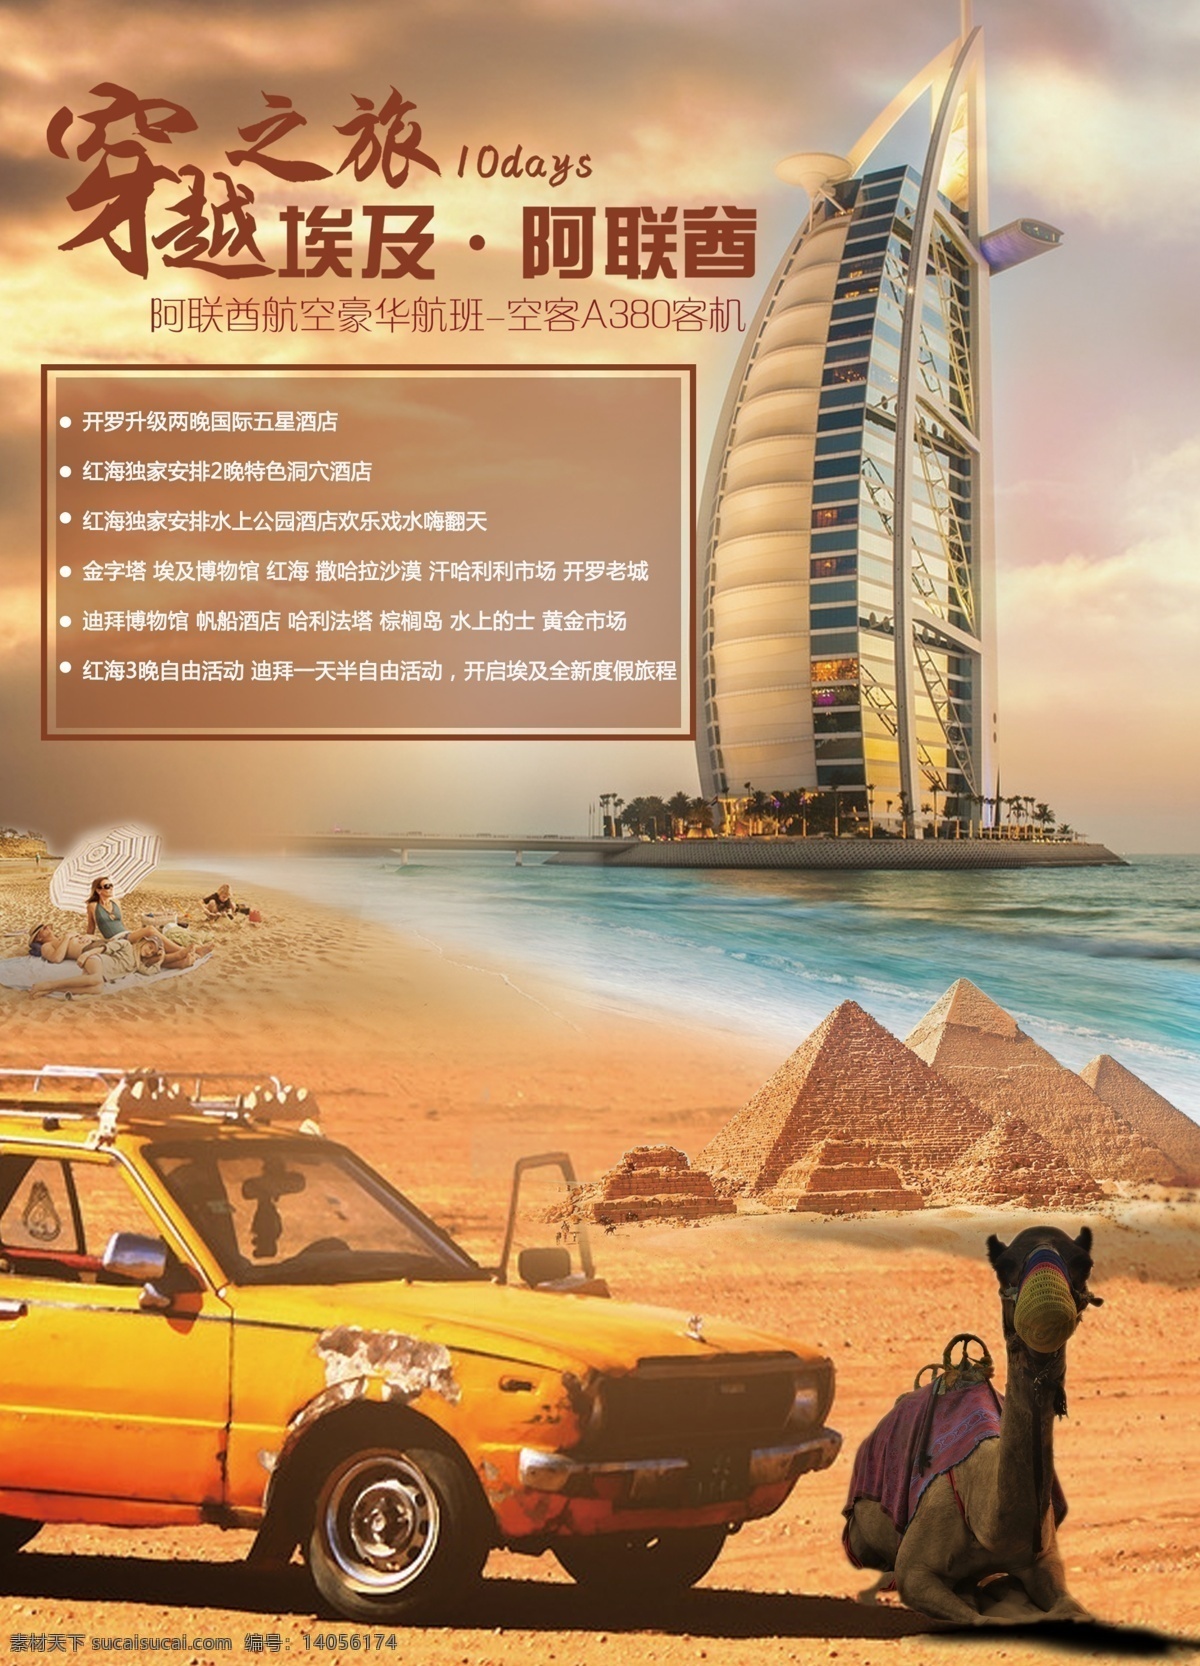 埃及 迪拜 旅游 宣传 广告 图 旅游海报 微信海报